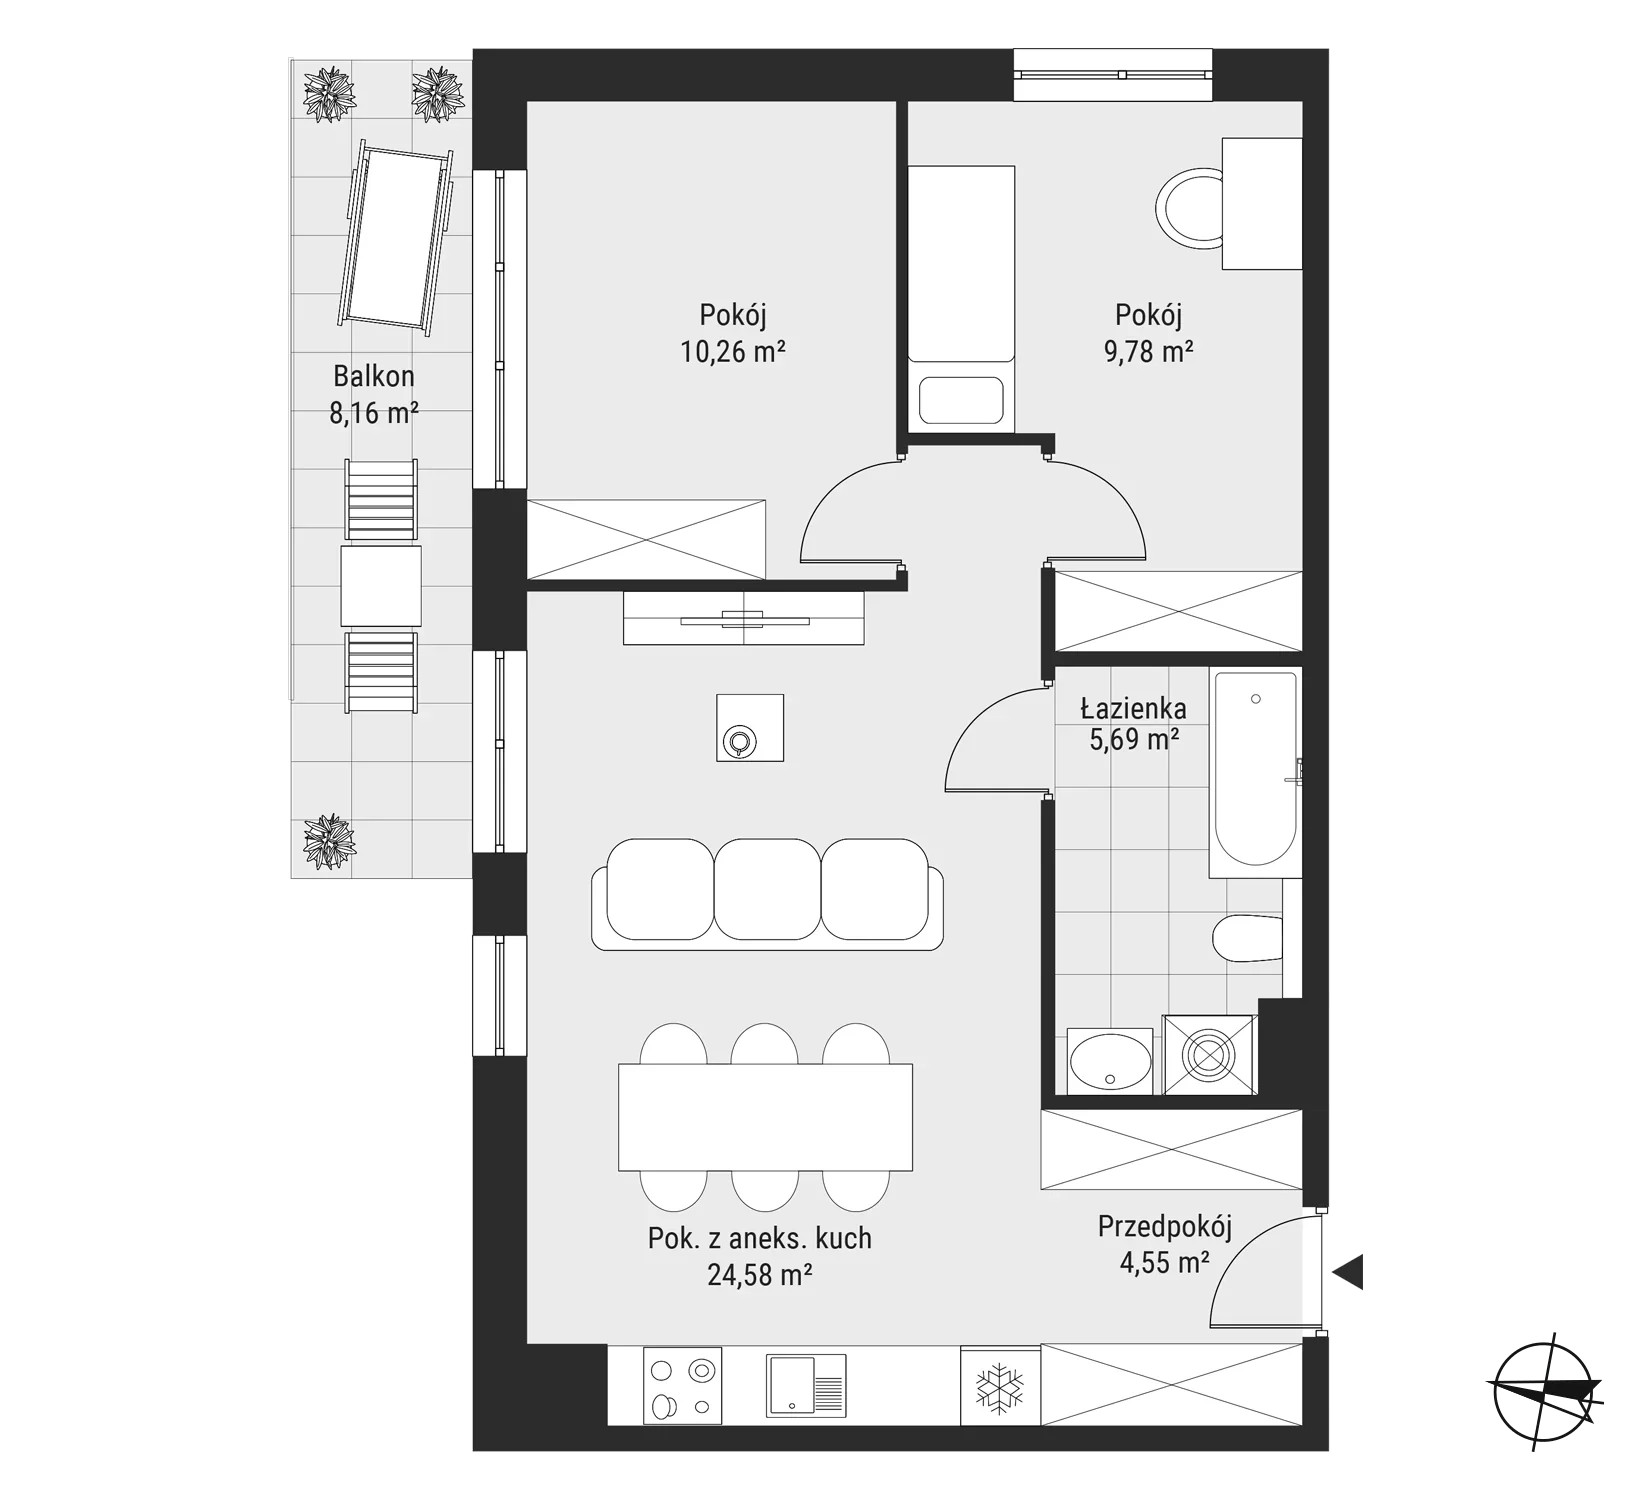 Mieszkanie 54,86 m², piętro 3, oferta nr mieszkanie 33, Bytkowska 3.0, Katowice, Wełnowiec-Józefowiec, ul. Bytkowska